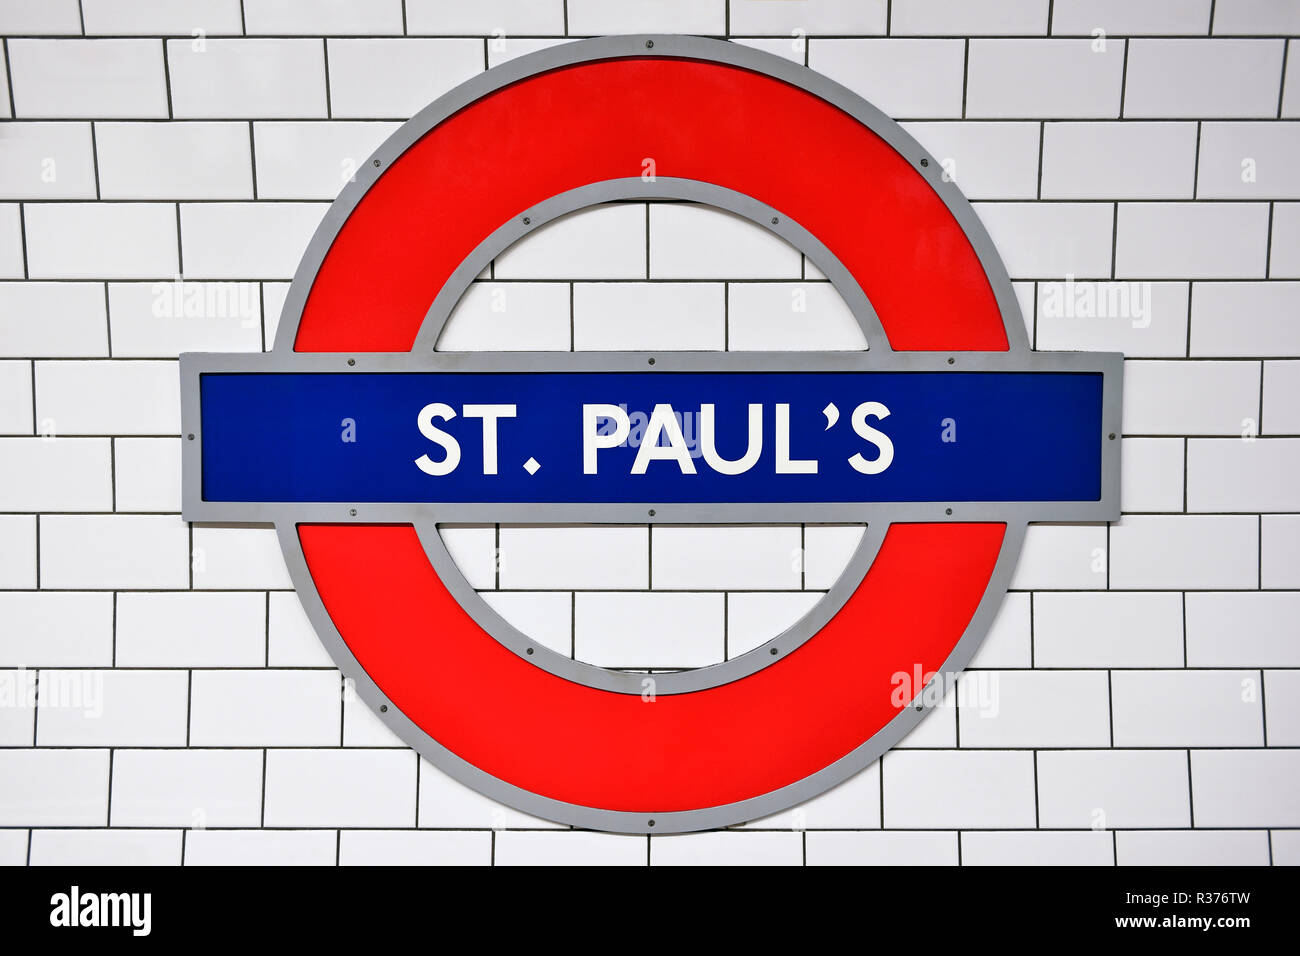 La station de métro St Paul, signe, Londres, Royaume-Uni Banque D'Images